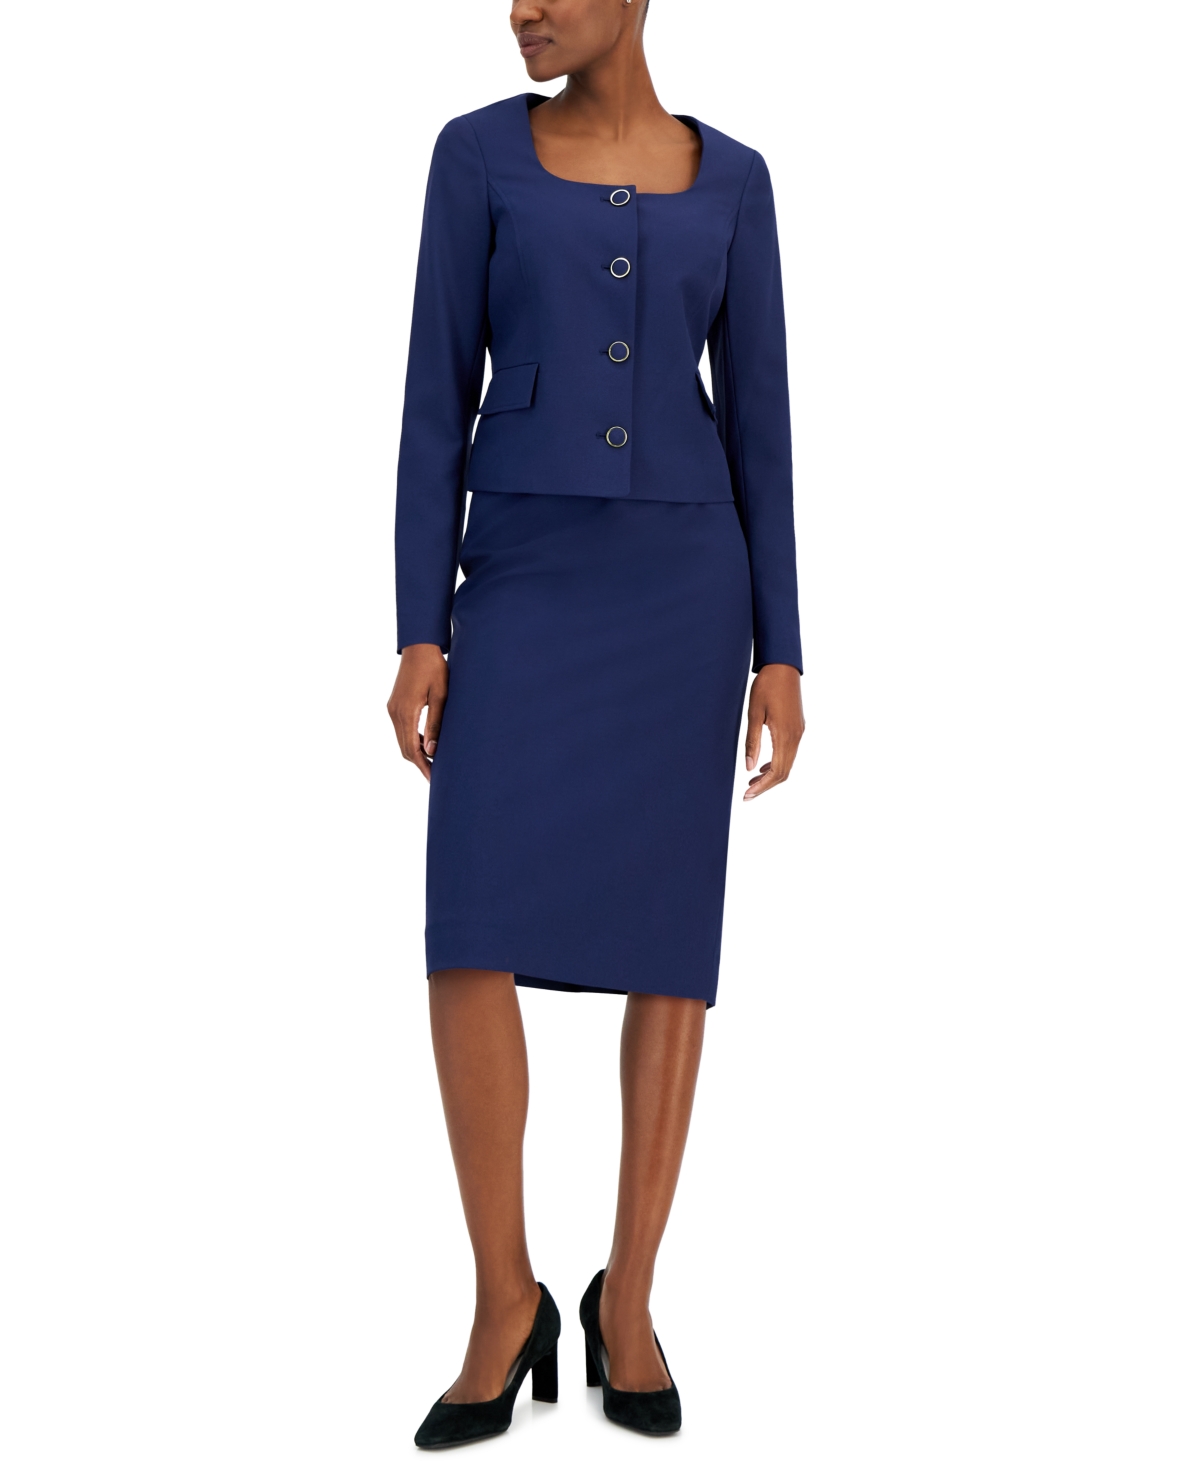 Nipon Boutique Women's Scoop-neck Jacket & Pencil Skirt Suit In Bright Navy